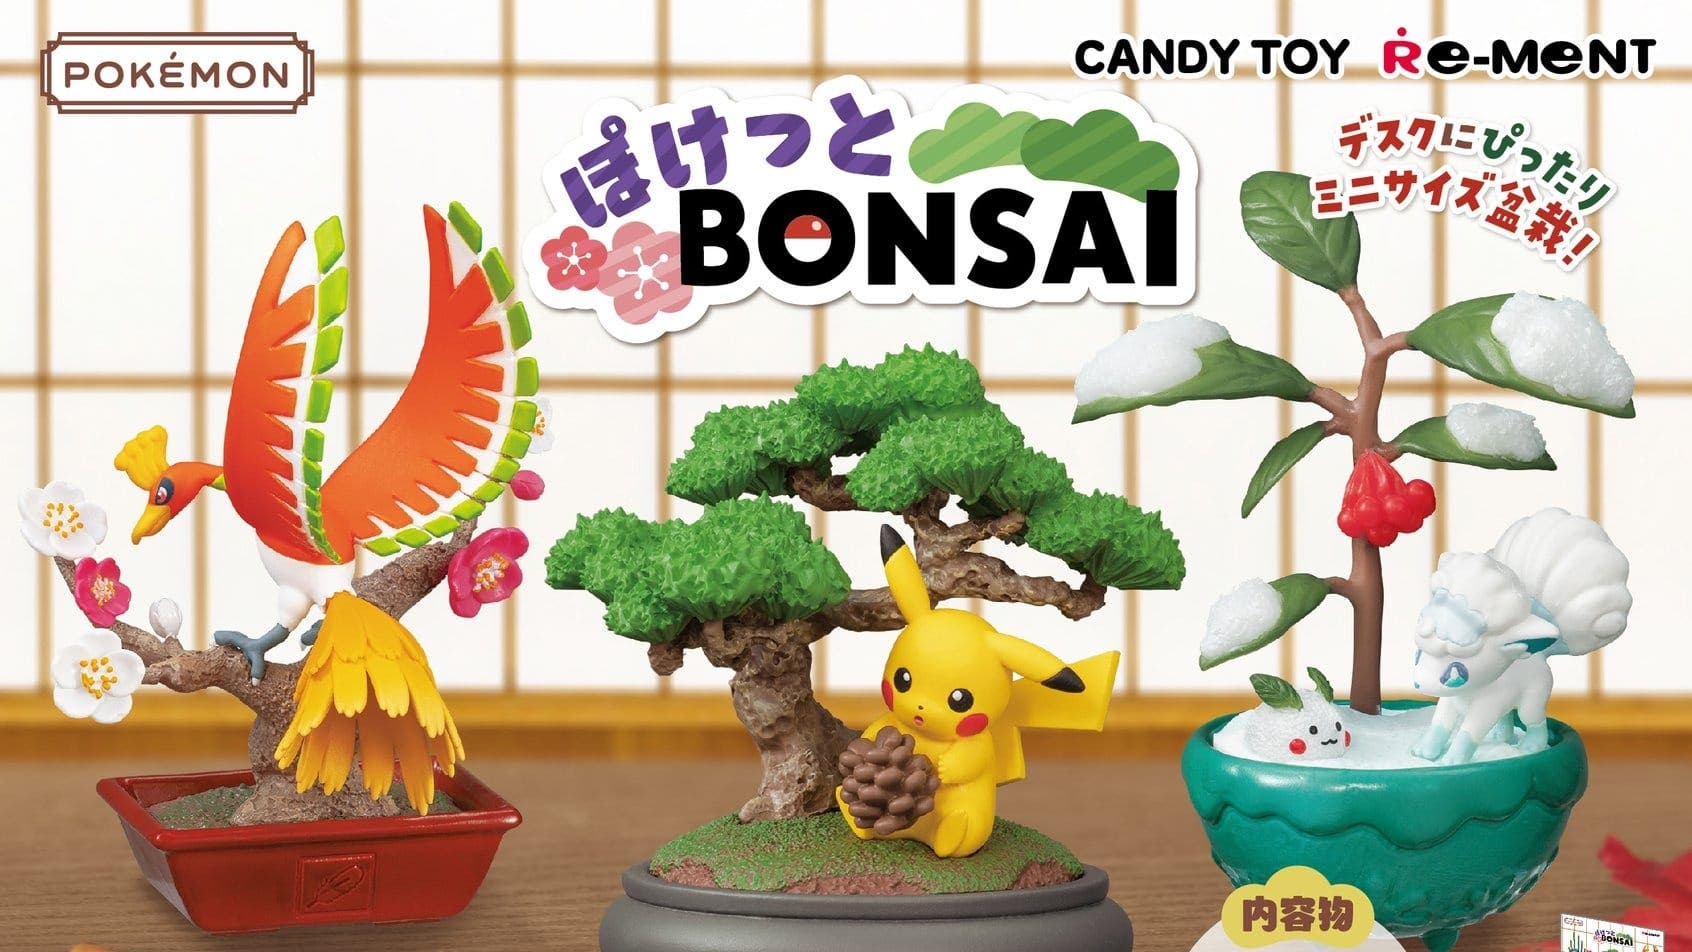 Echad un vistazo a los flotadores y las nuevas colecciones de figuras Pokémon de Re-ment: Pokémon Bonsai y Dreaming Case 3